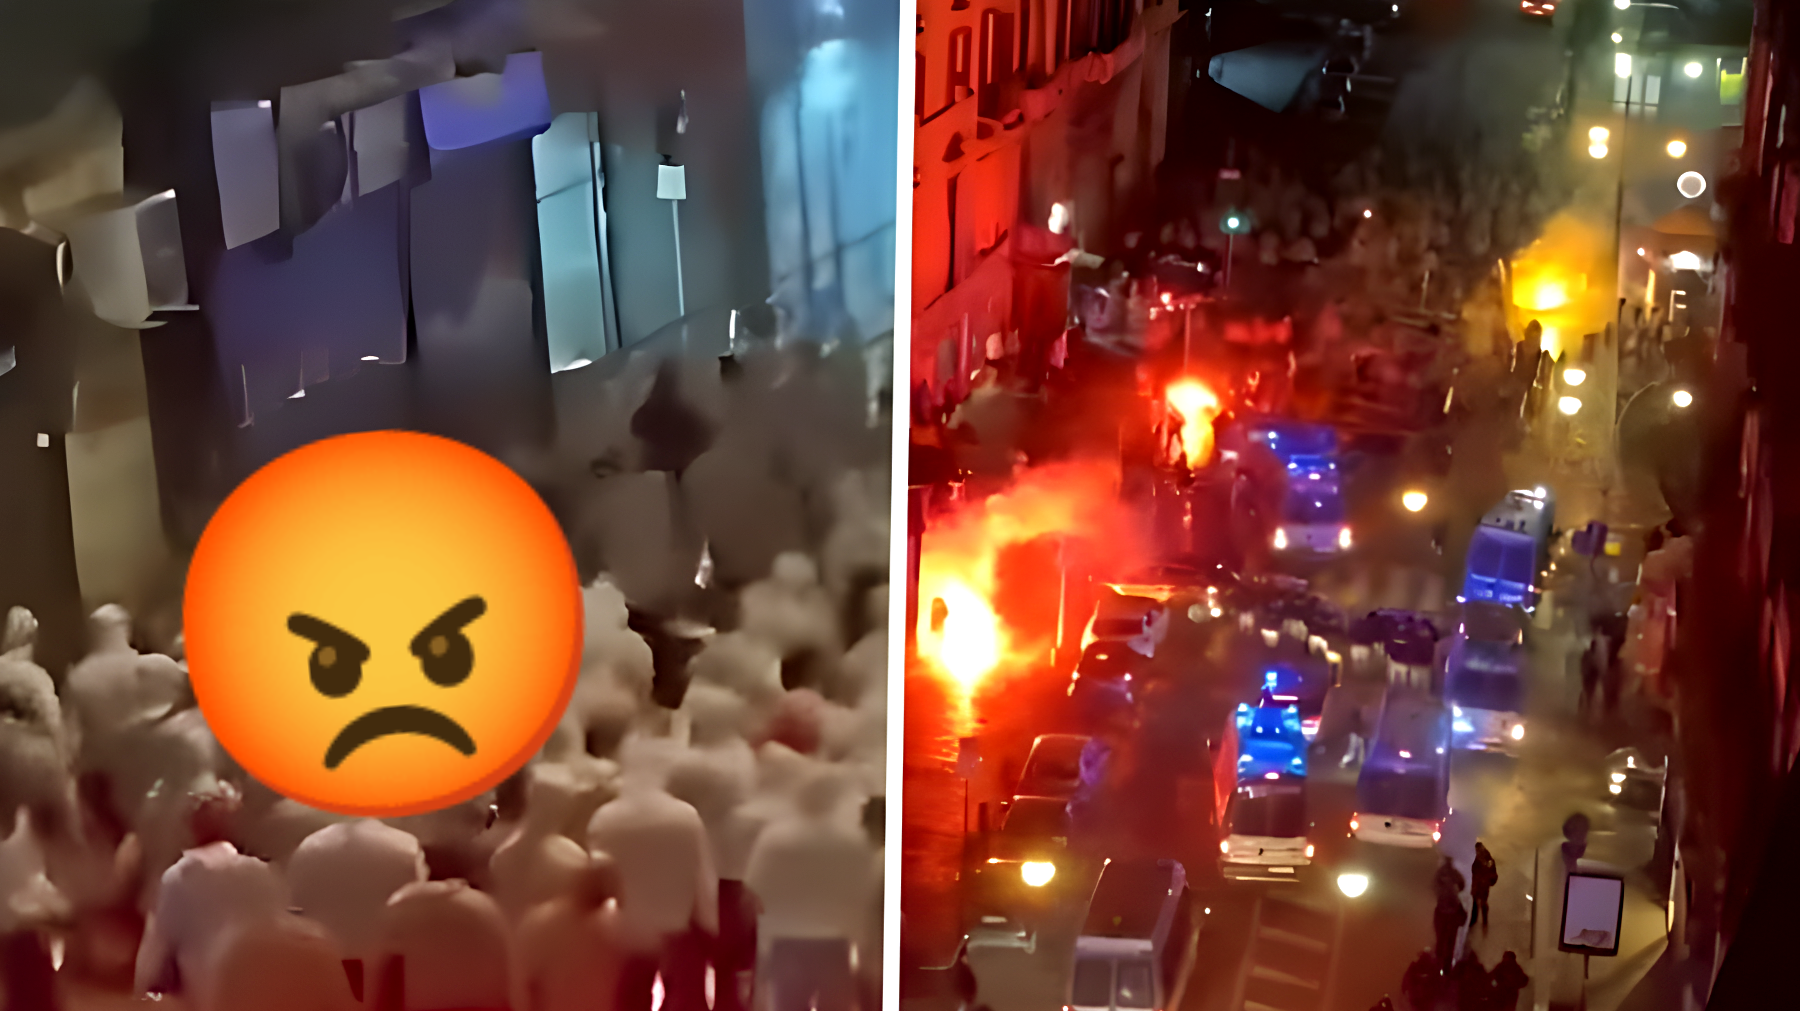 Guerra degli ultras a Napoli: una vergogna senza precedenti per la città. Ecco cosa è successo.